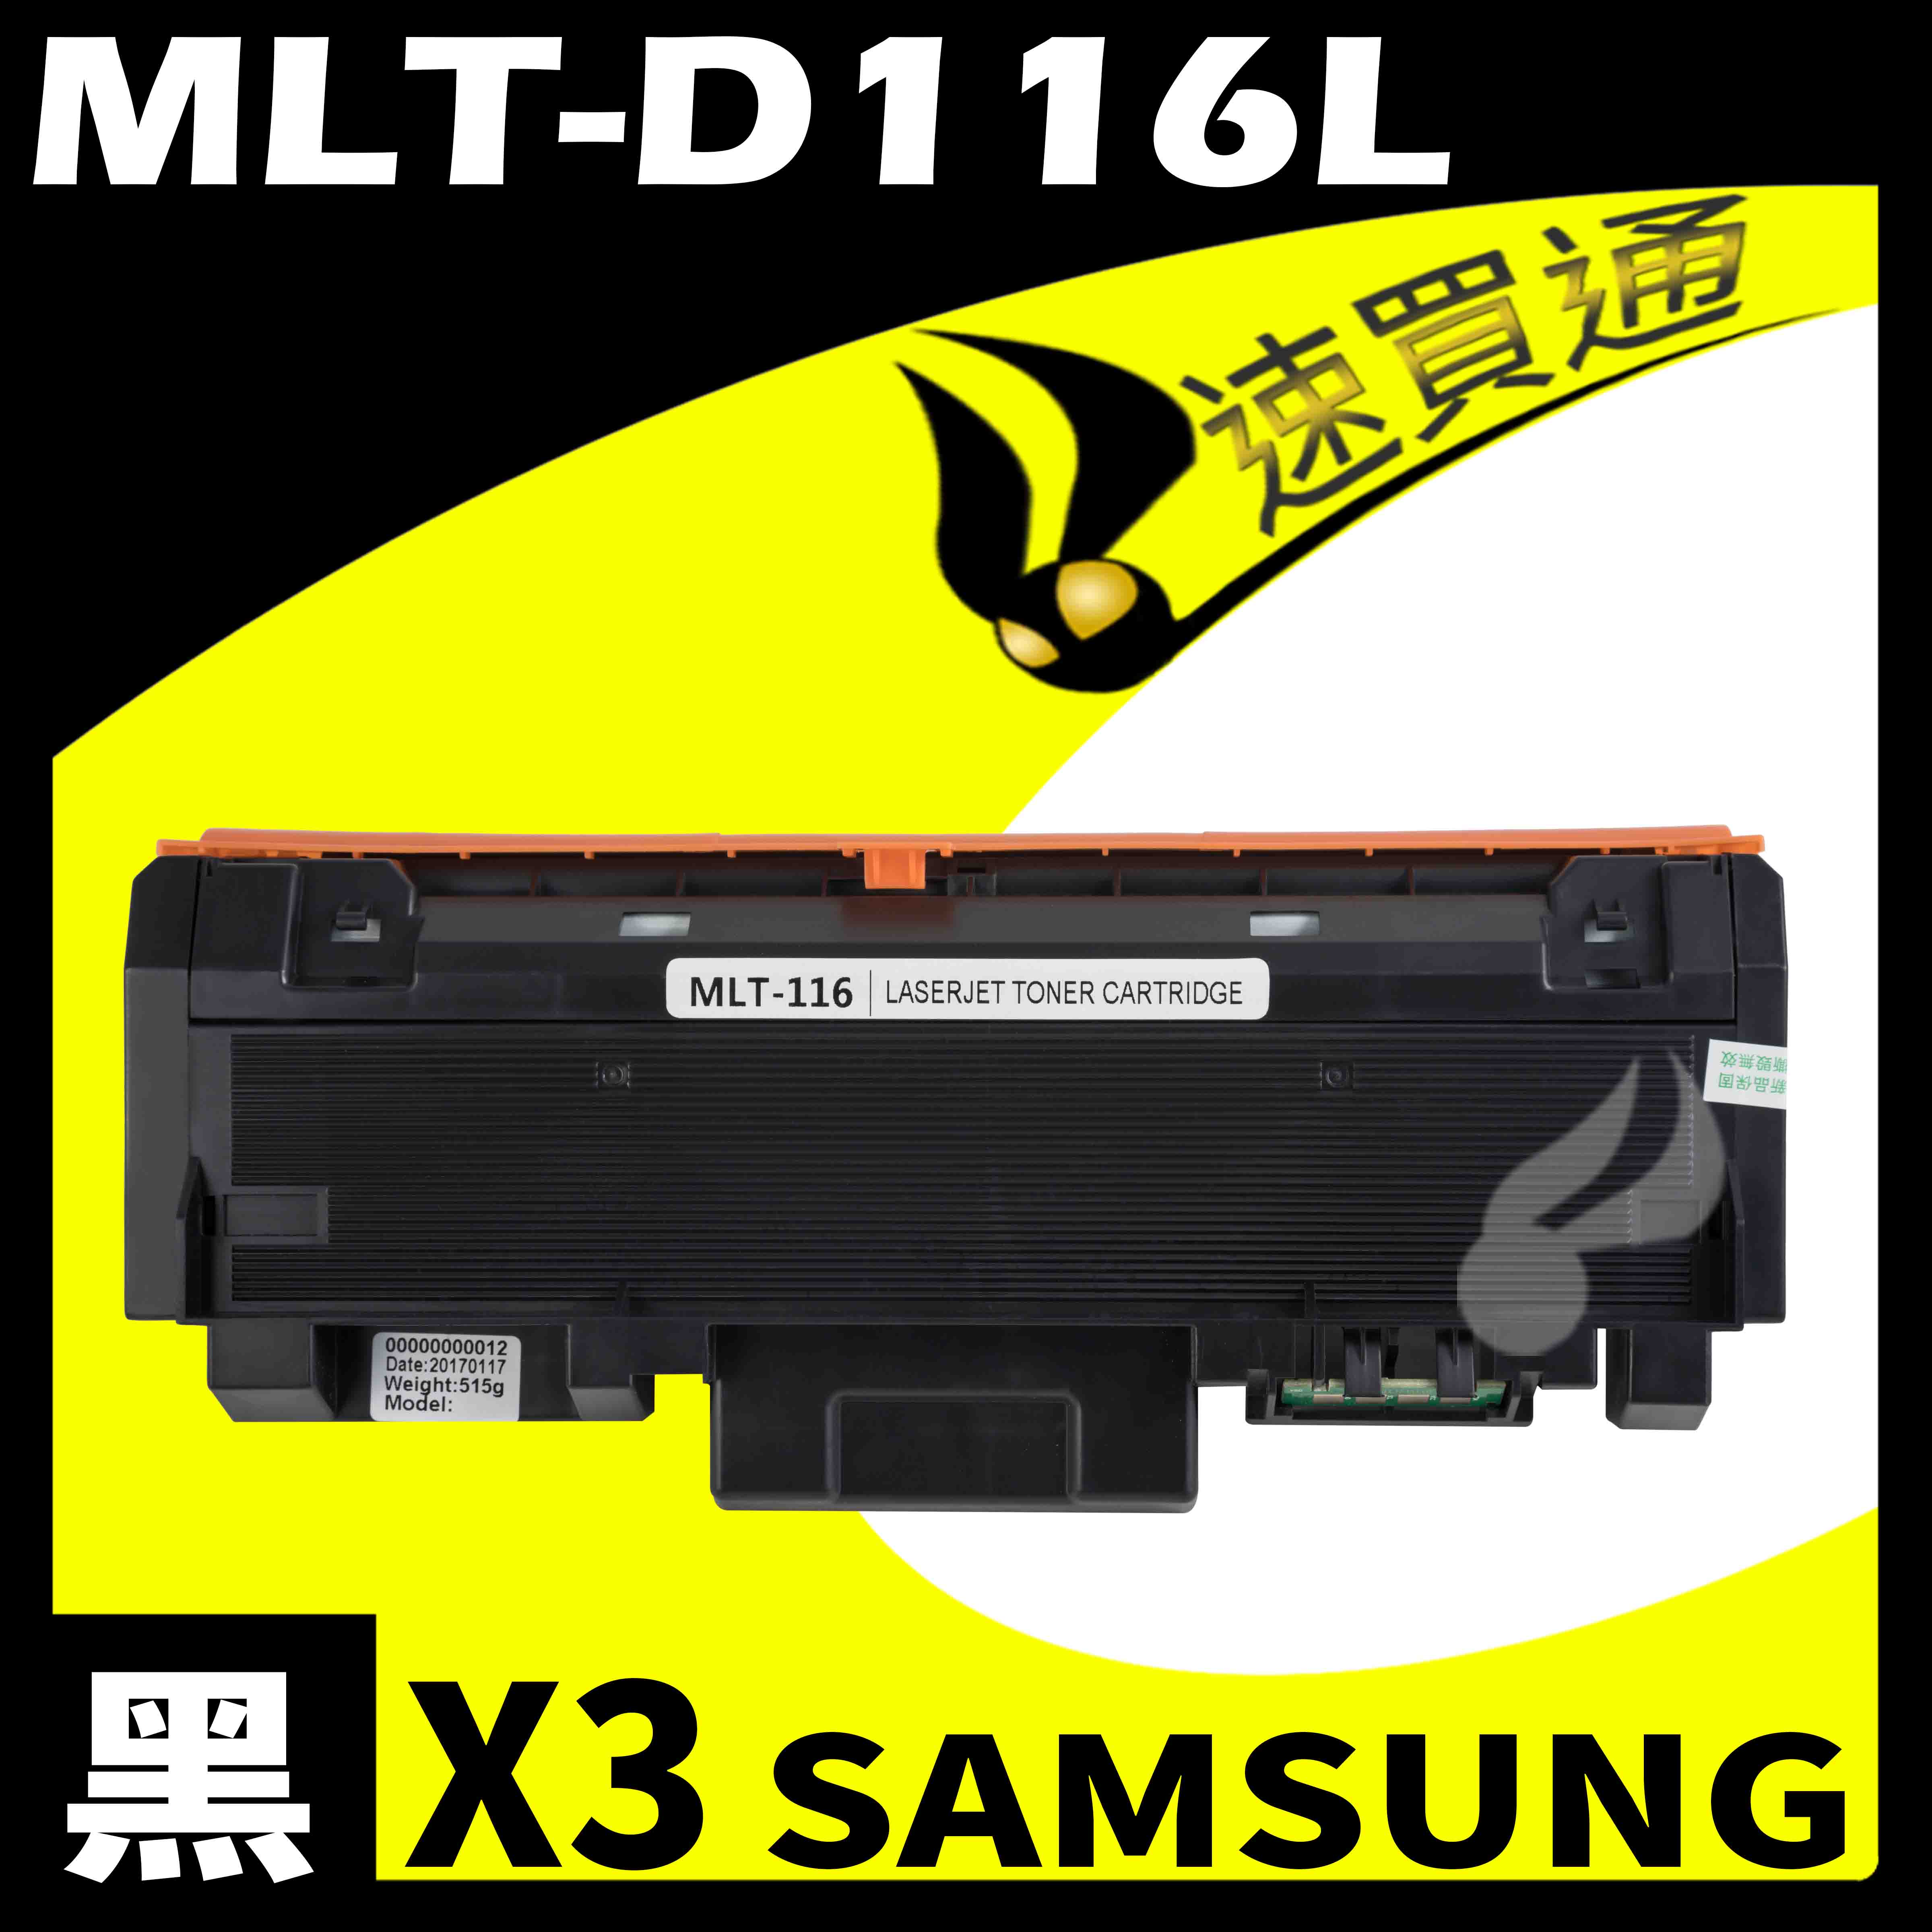 【速買通】超值3件組 SAMSUNG MLT-D116L 相容碳粉匣